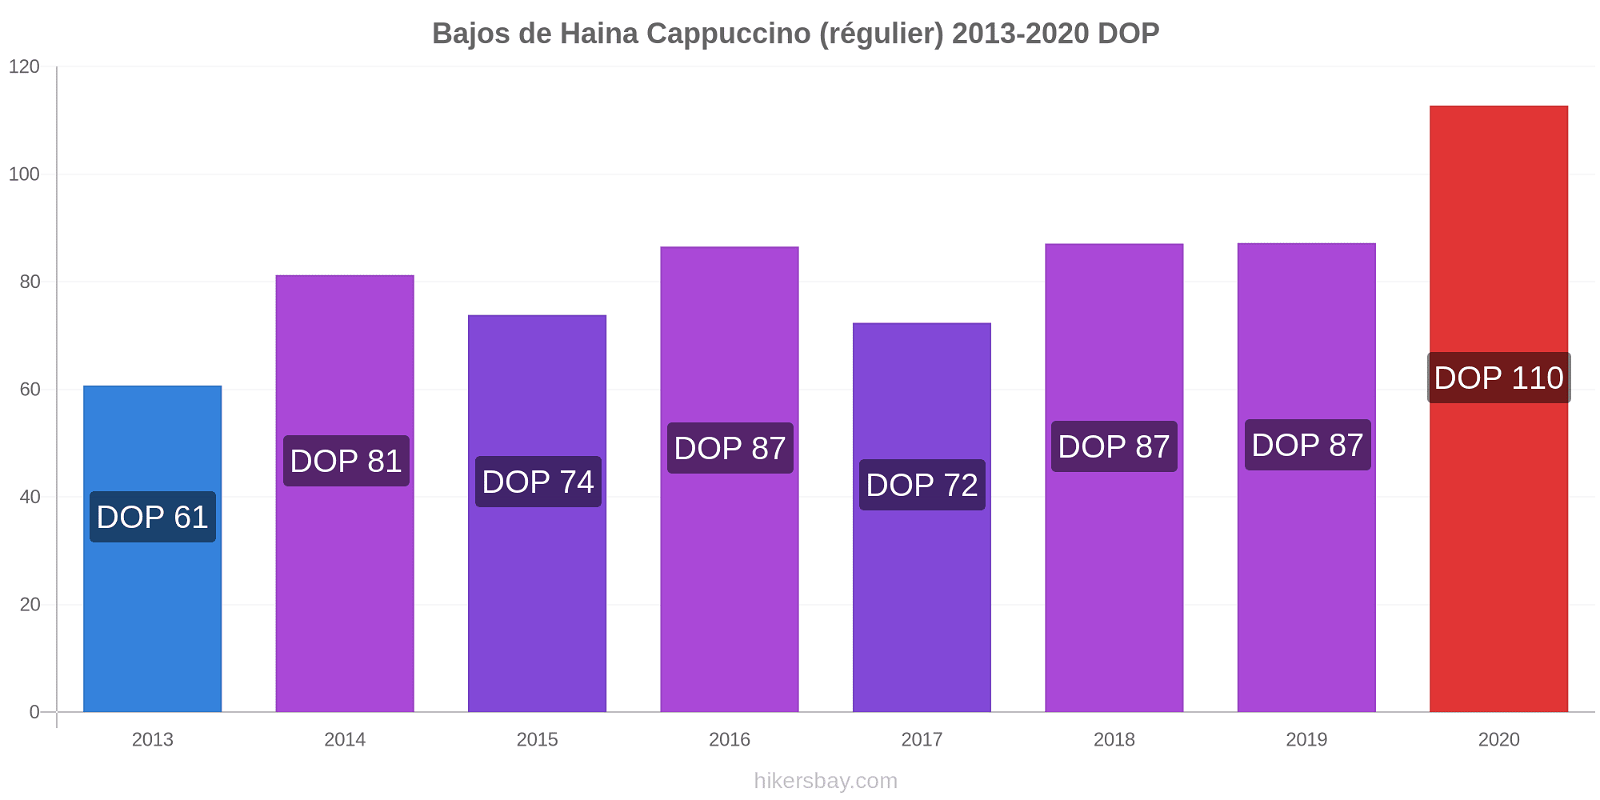 Bajos de Haina changements de prix Cappuccino (régulier) hikersbay.com